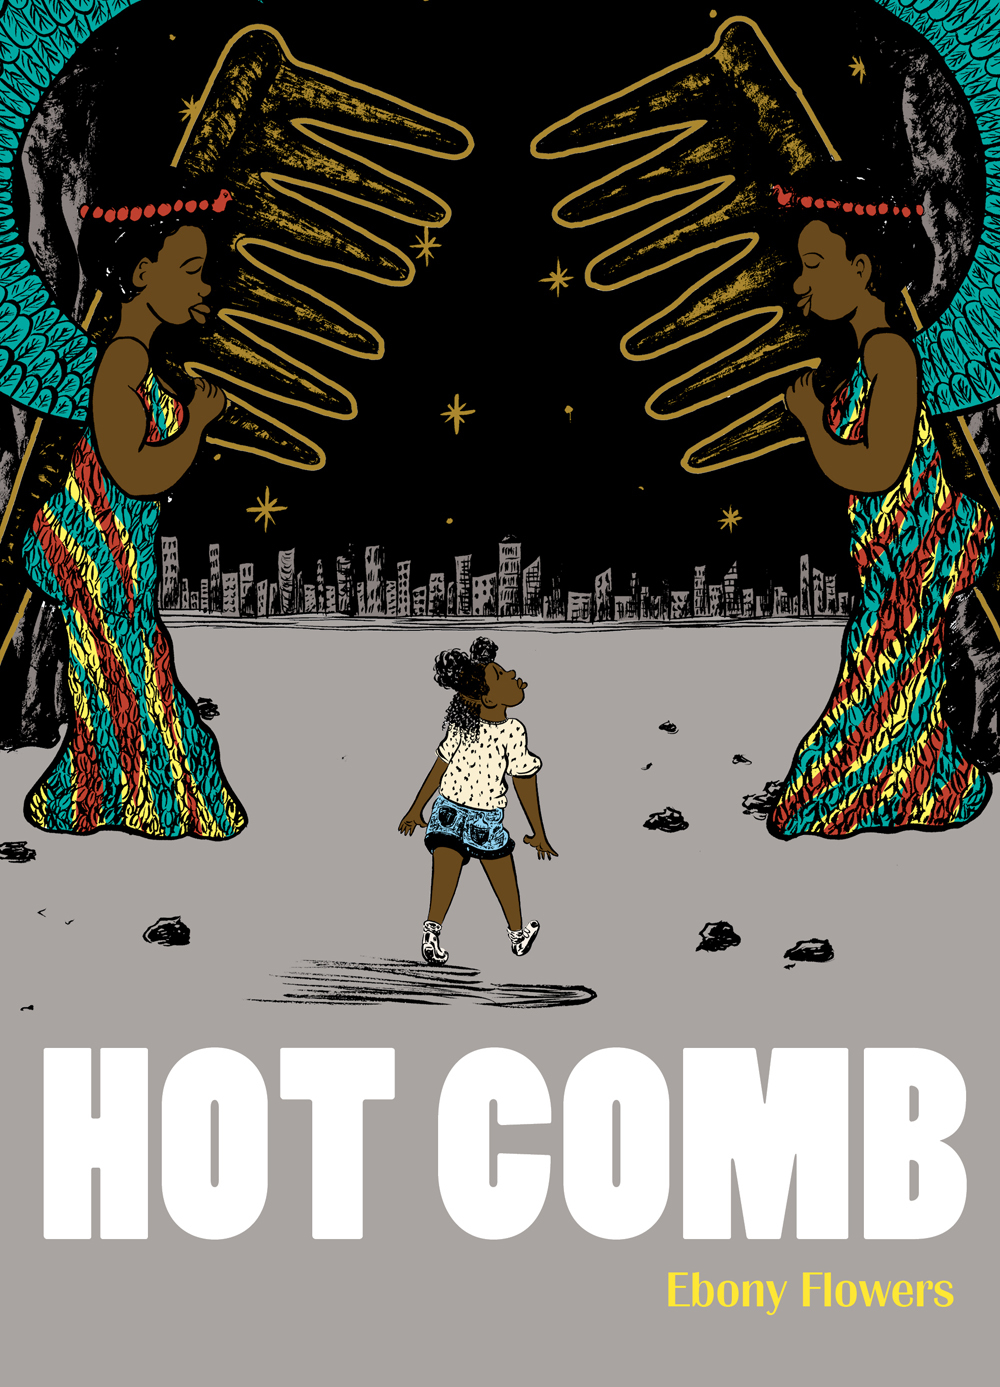 Hot Comb Graphic Novel